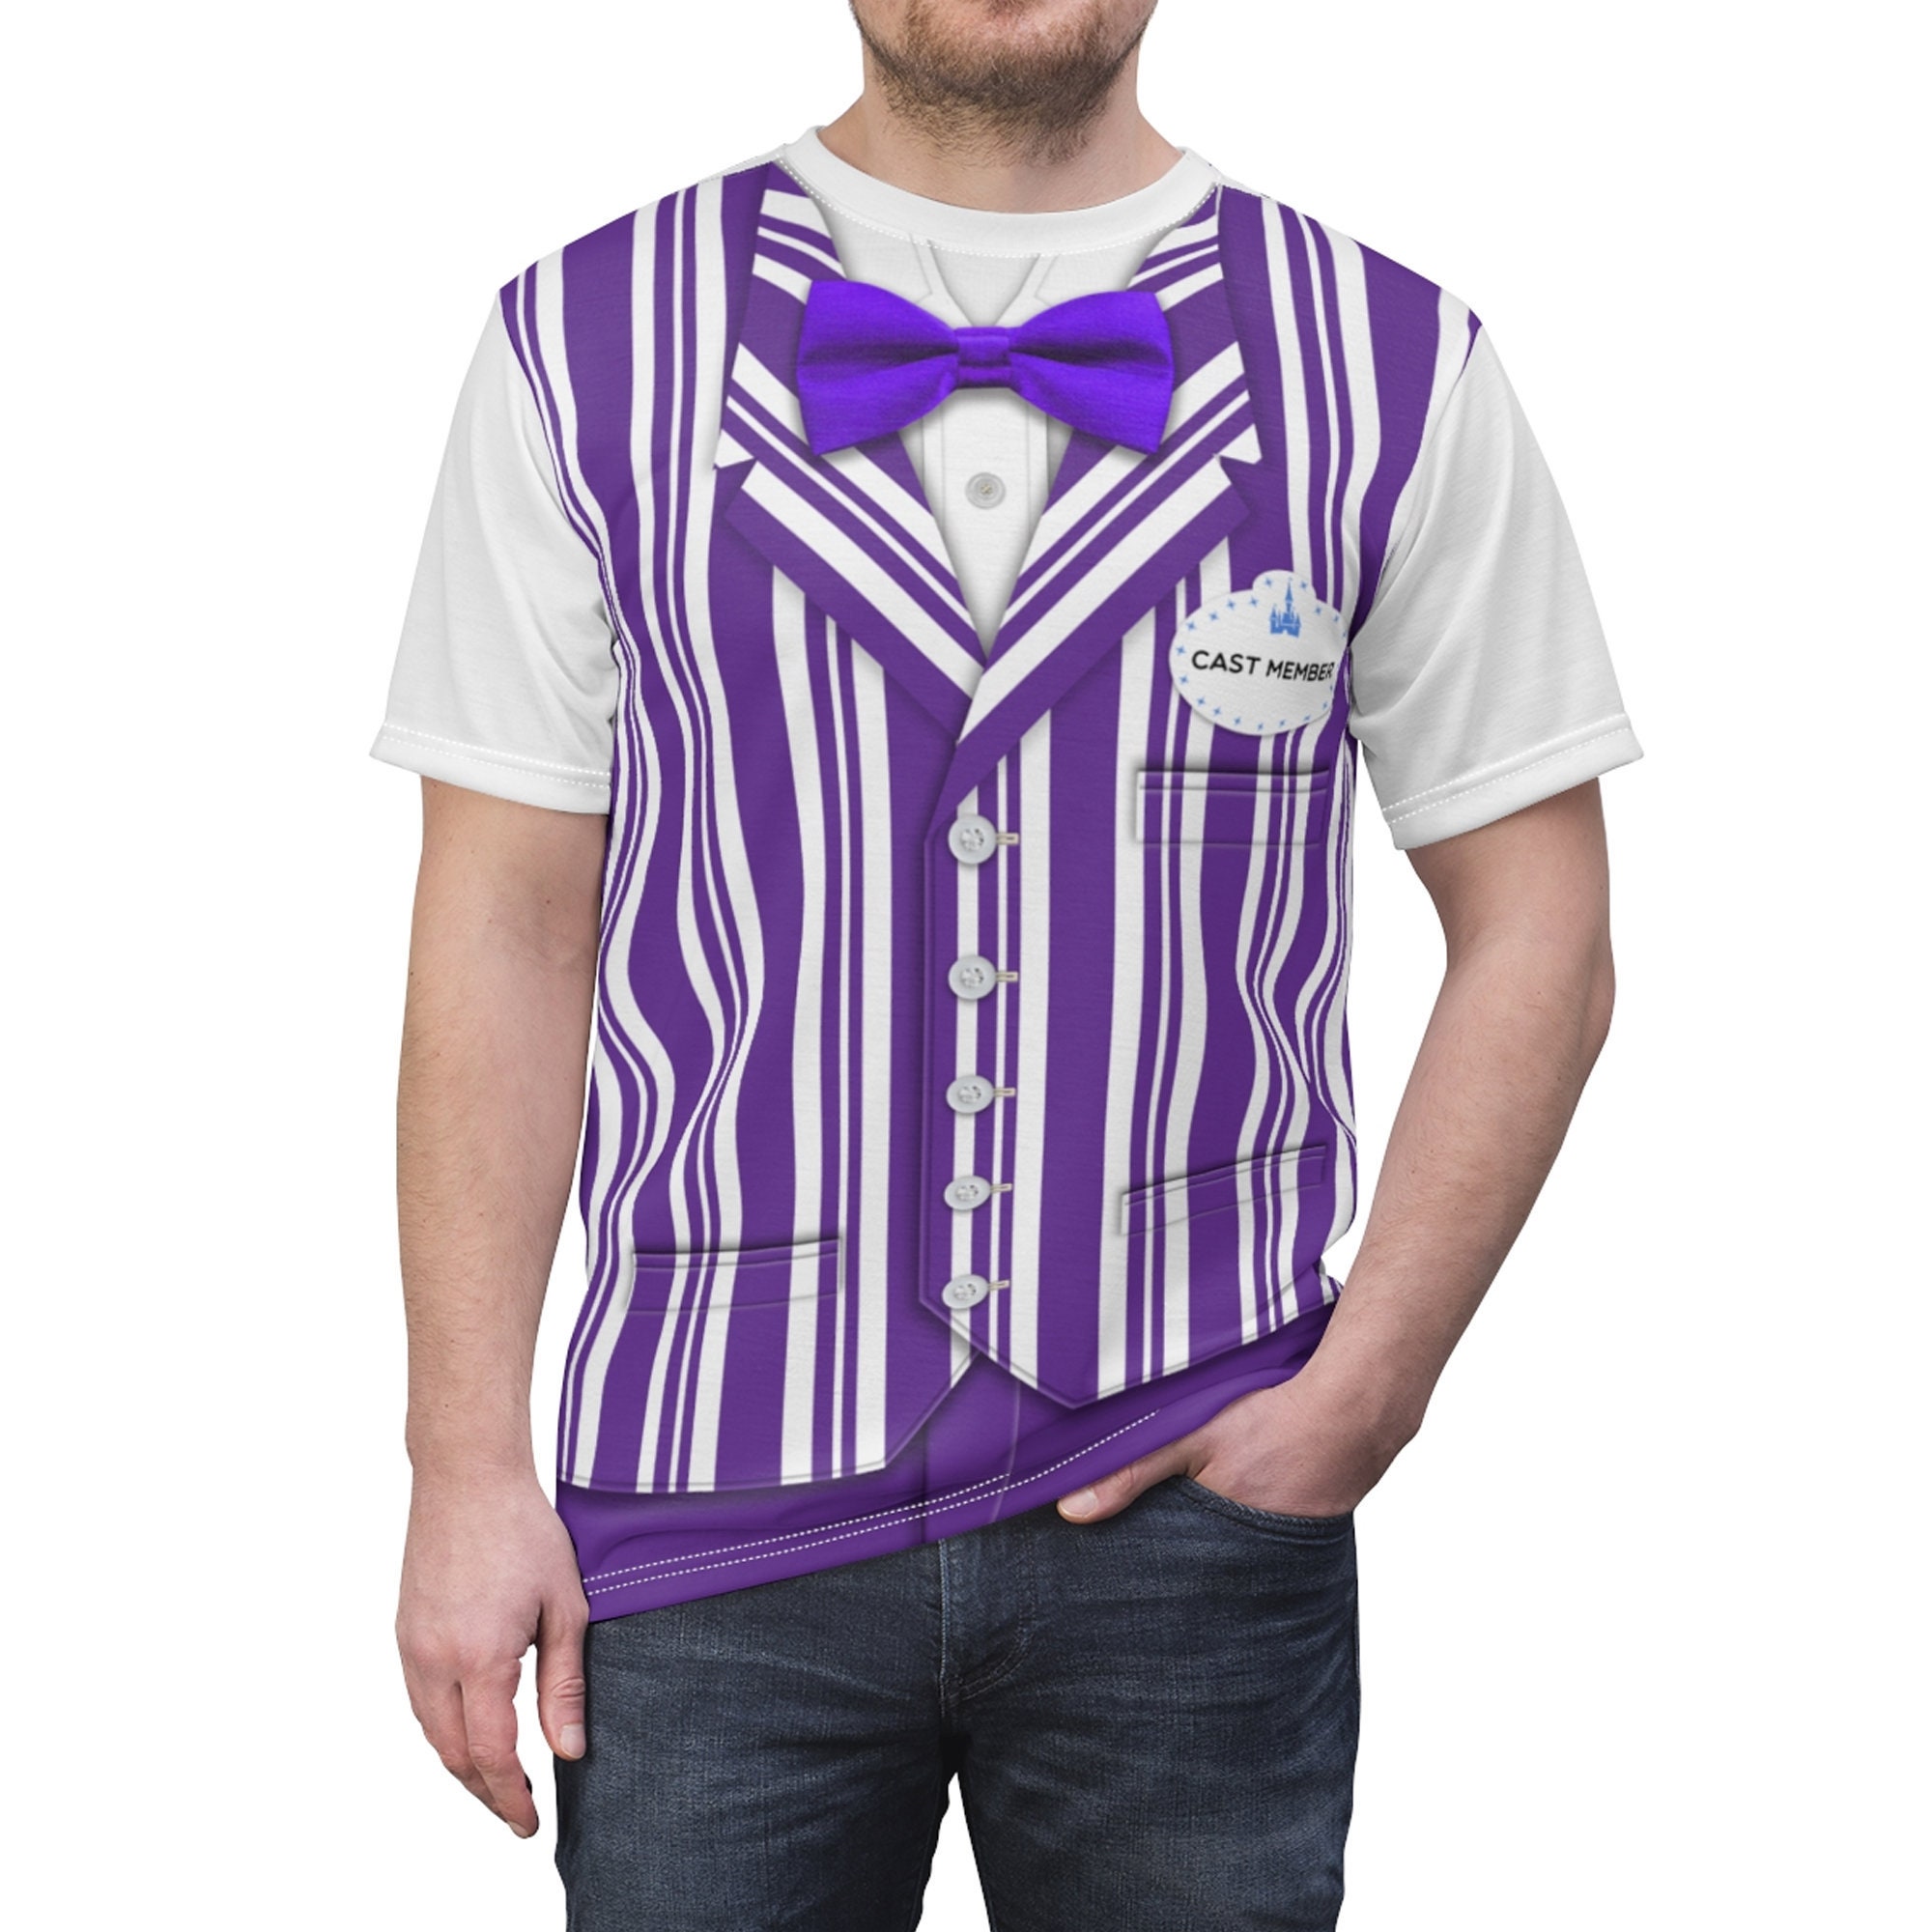 Purple Dapper Dan Shirt, The Dapper Dans Costume,